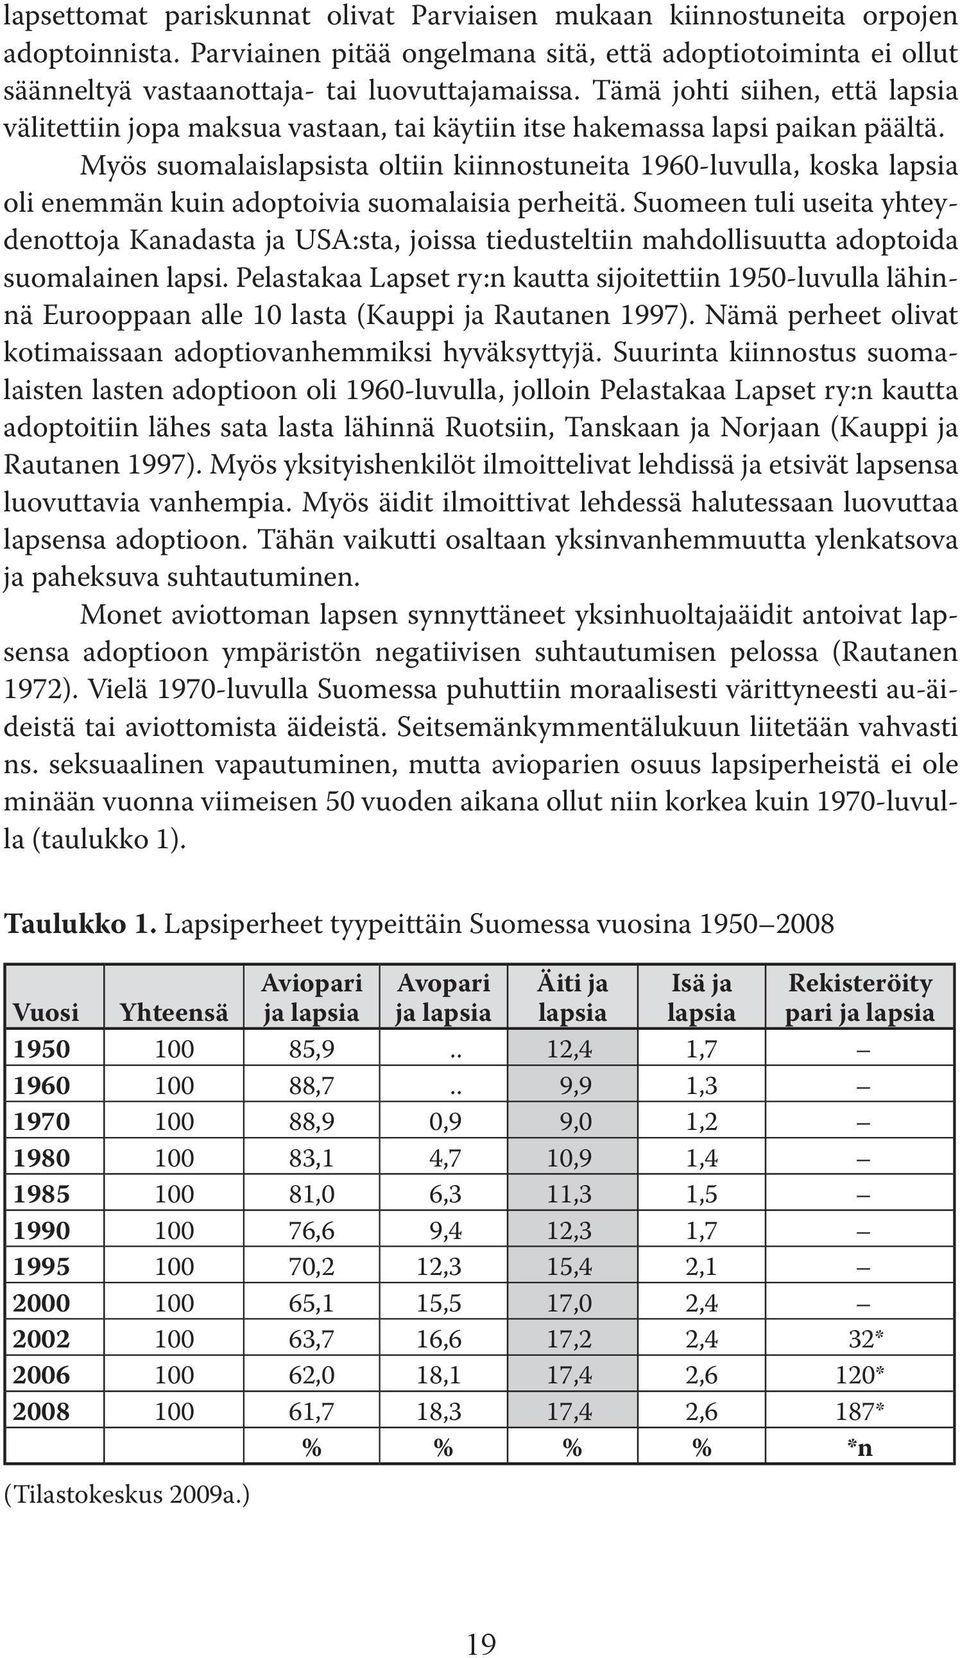 Myös suomalaislapsista oltiin kiinnostuneita 1960-luvulla, koska lapsia oli enemmän kuin adoptoivia suomalaisia perheitä.